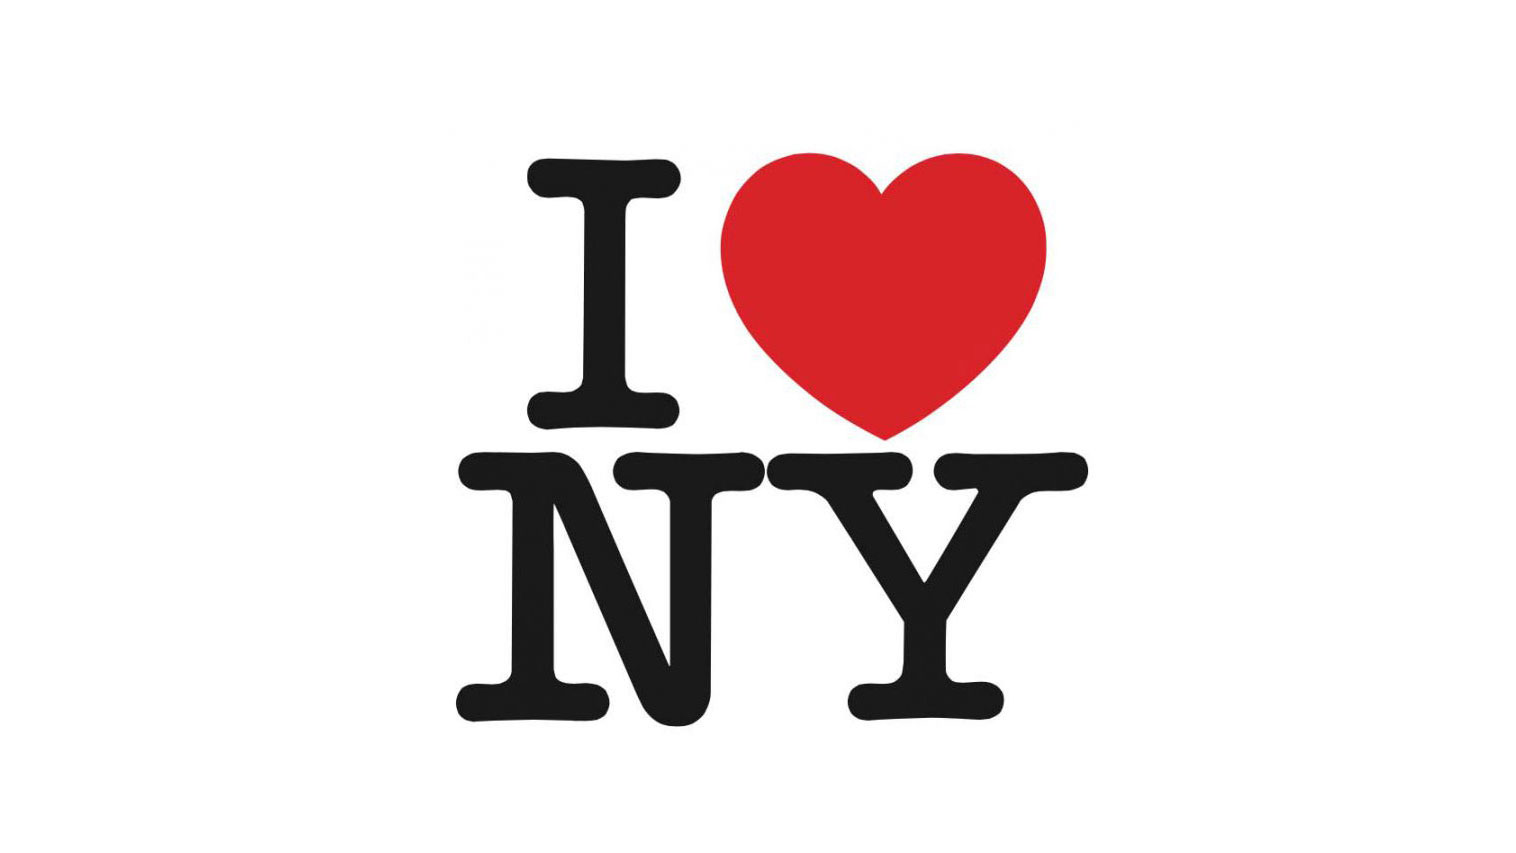 Best logos: I Love New York logo